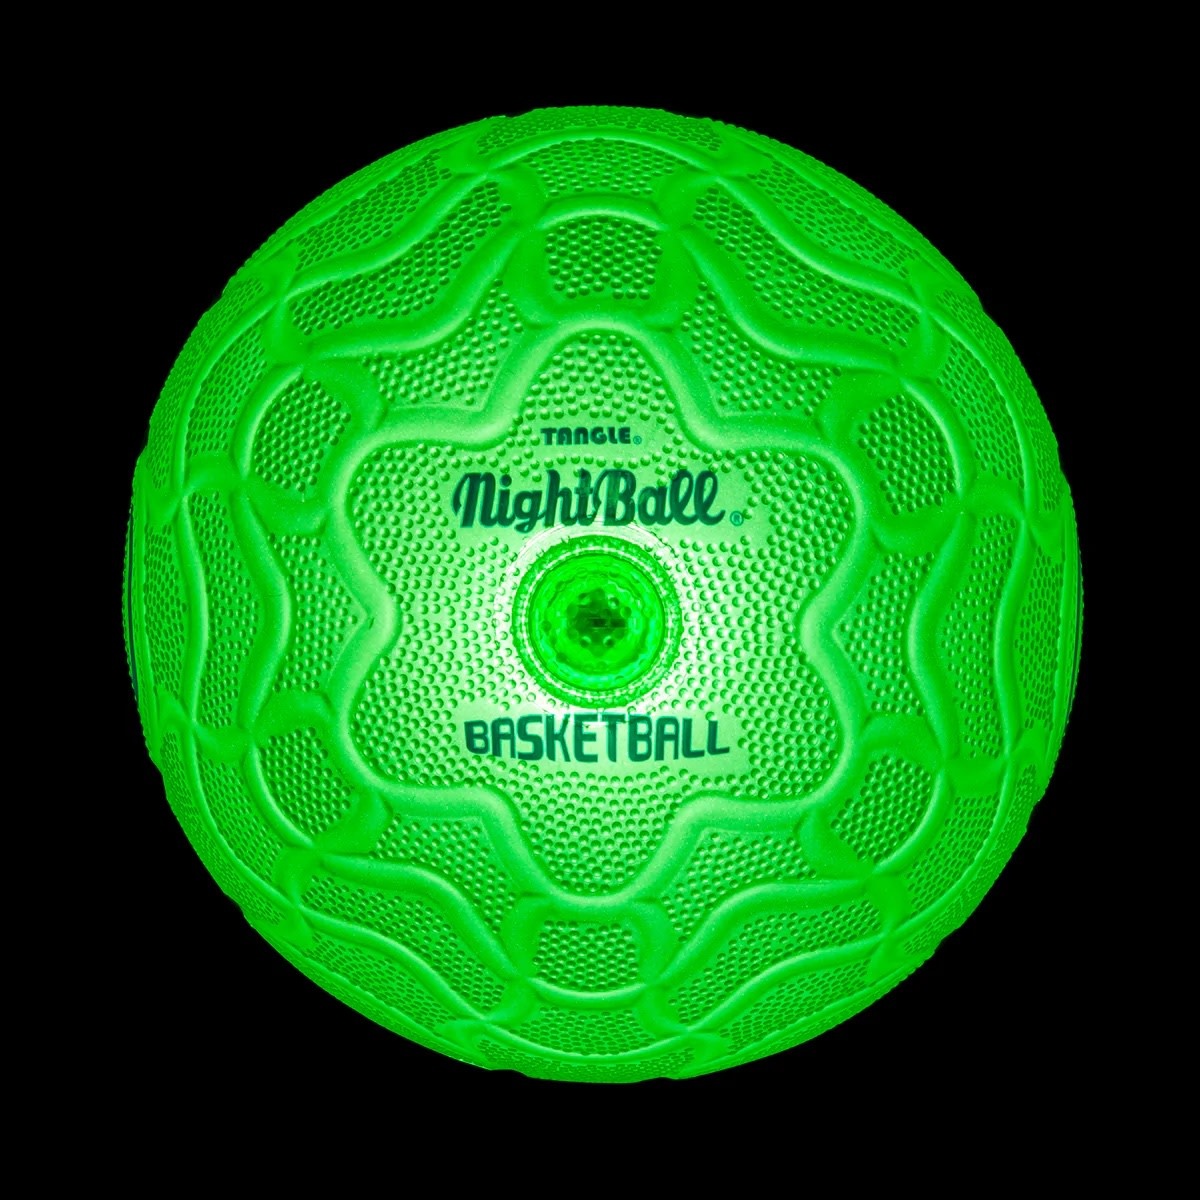 Tangle Nightball Basketball Green-2